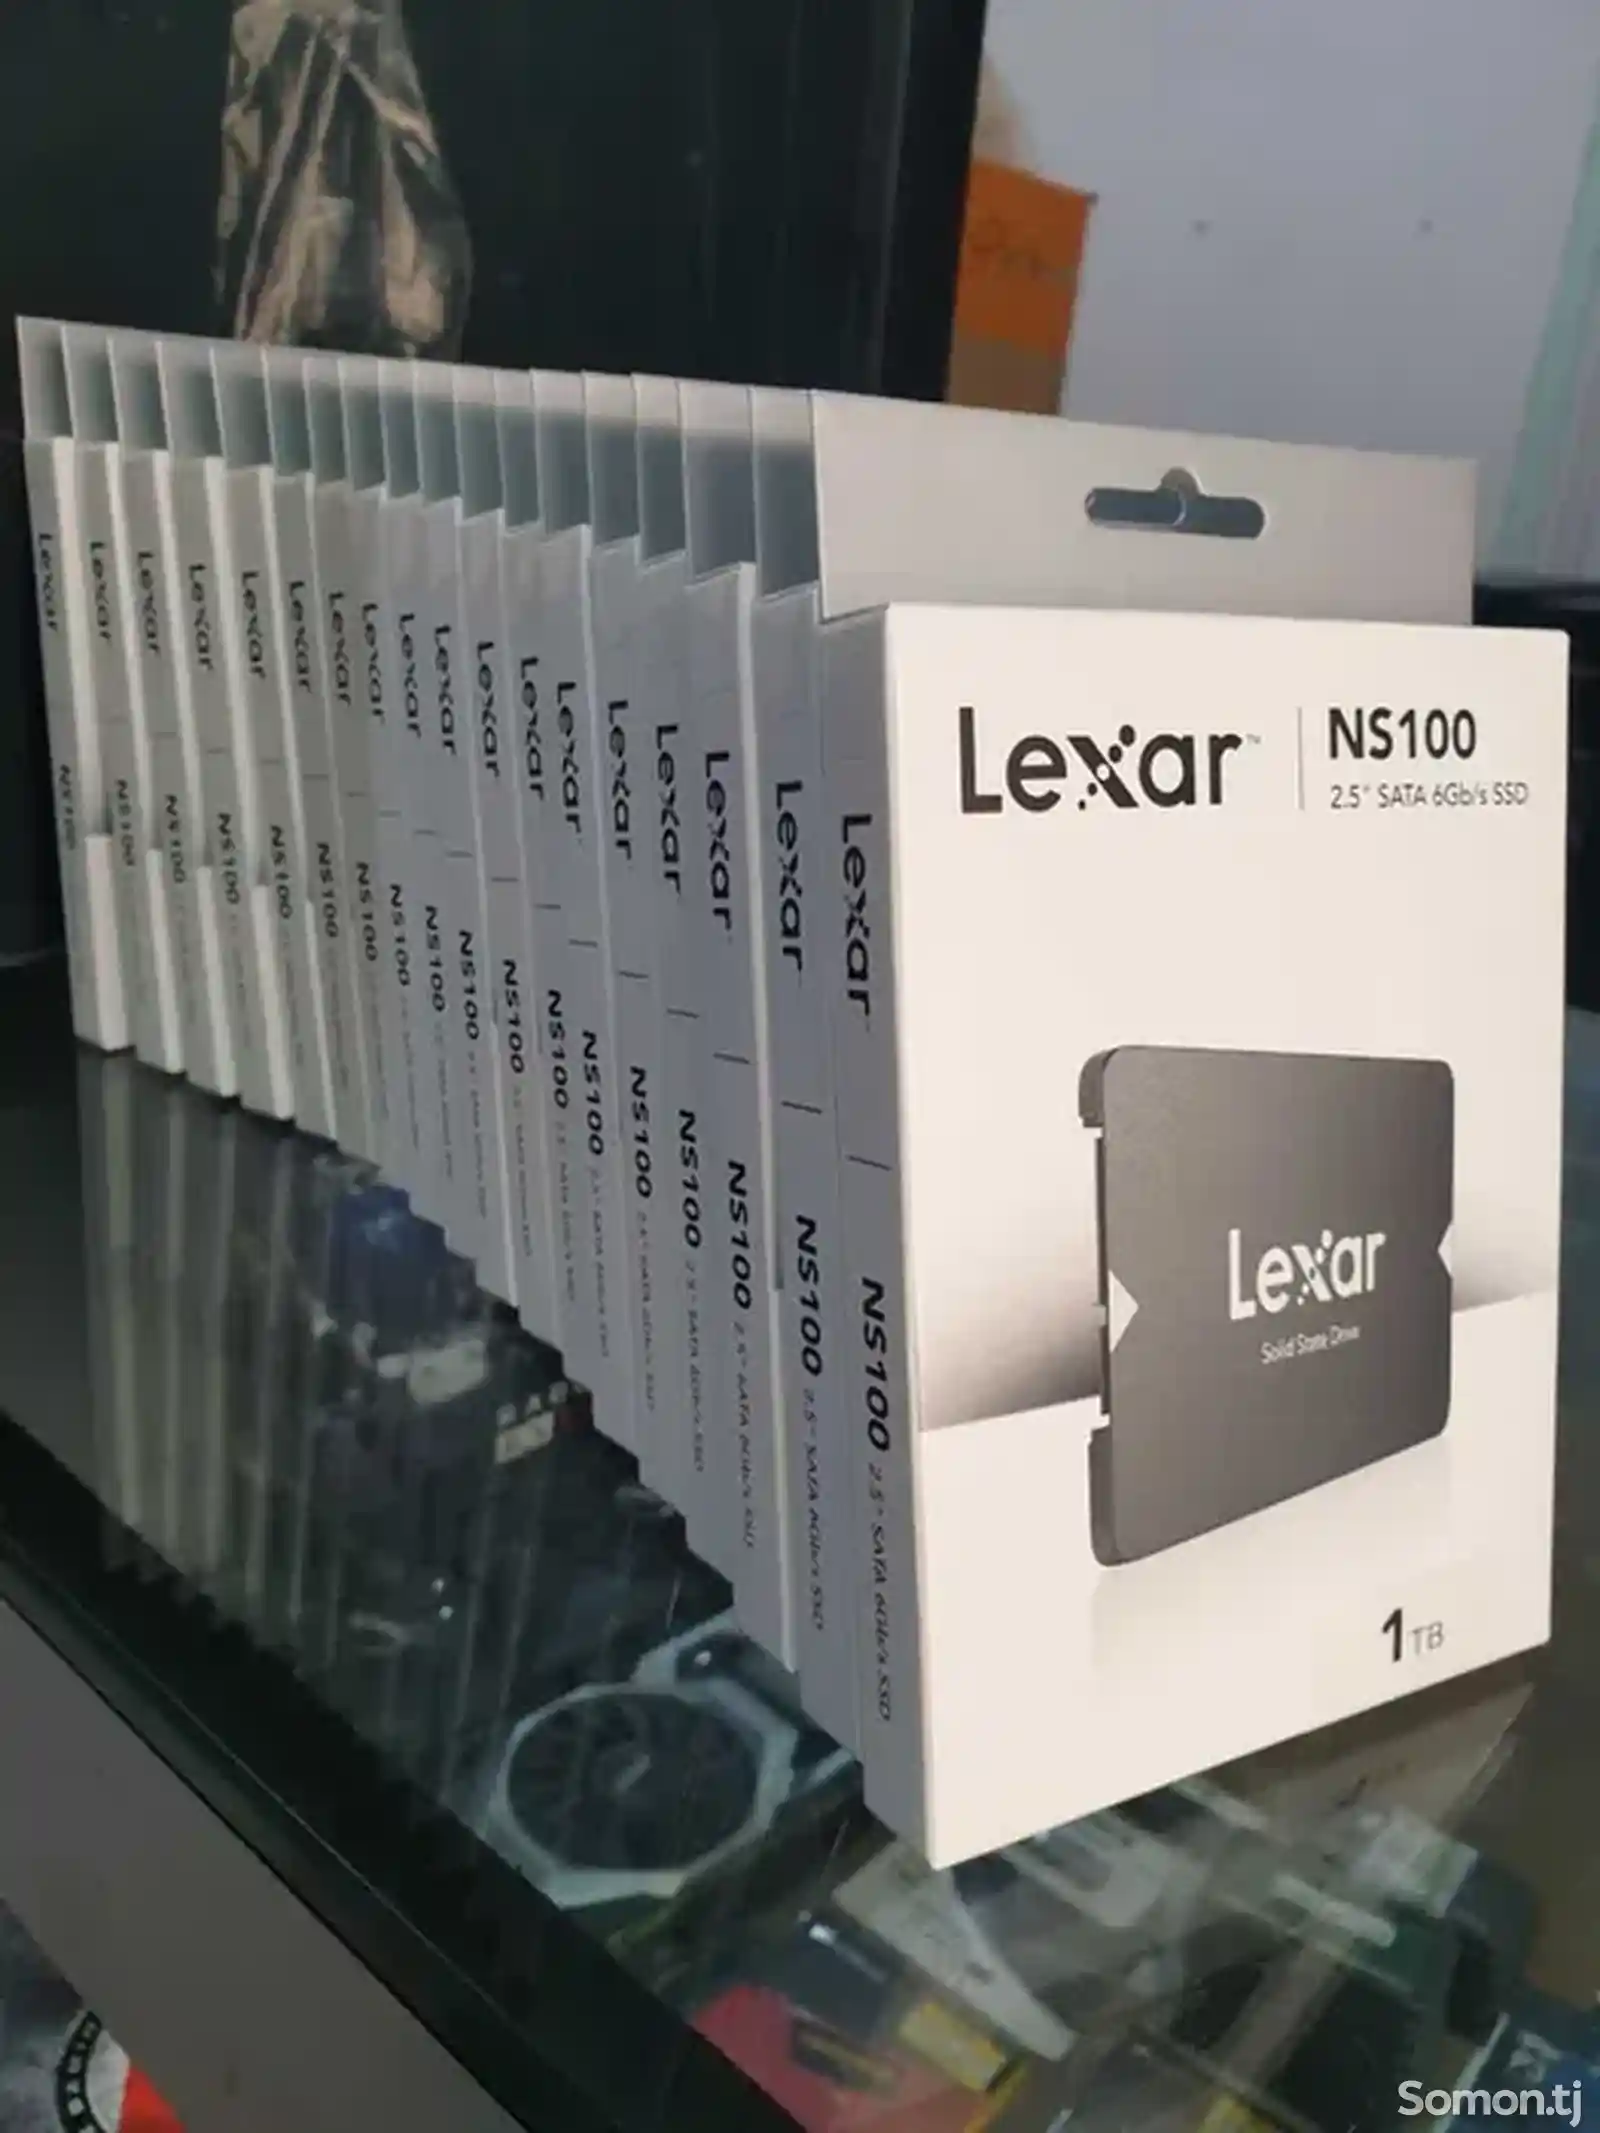 SSD накопитель Lexar NS100, 1TB